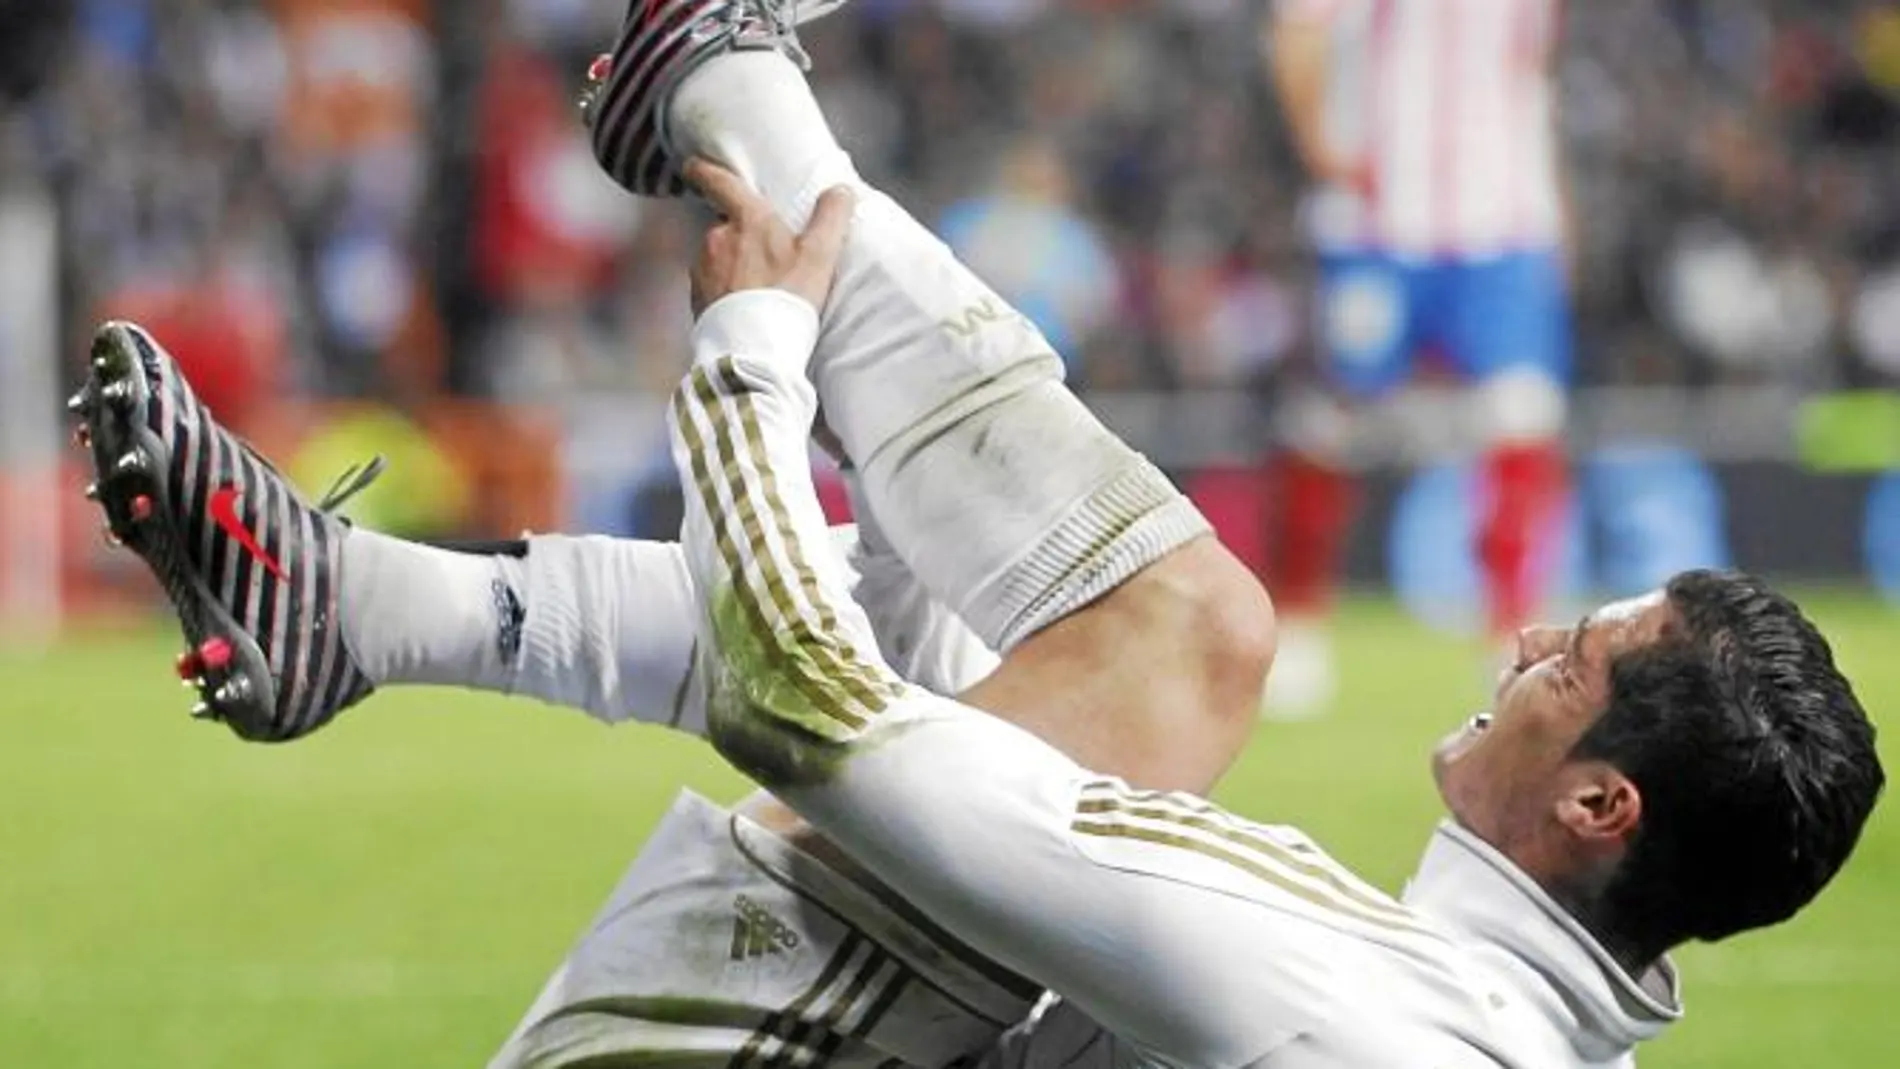 Cristiano Ronaldo se agarra el tobillo izquierdo tras la entrada de Perea